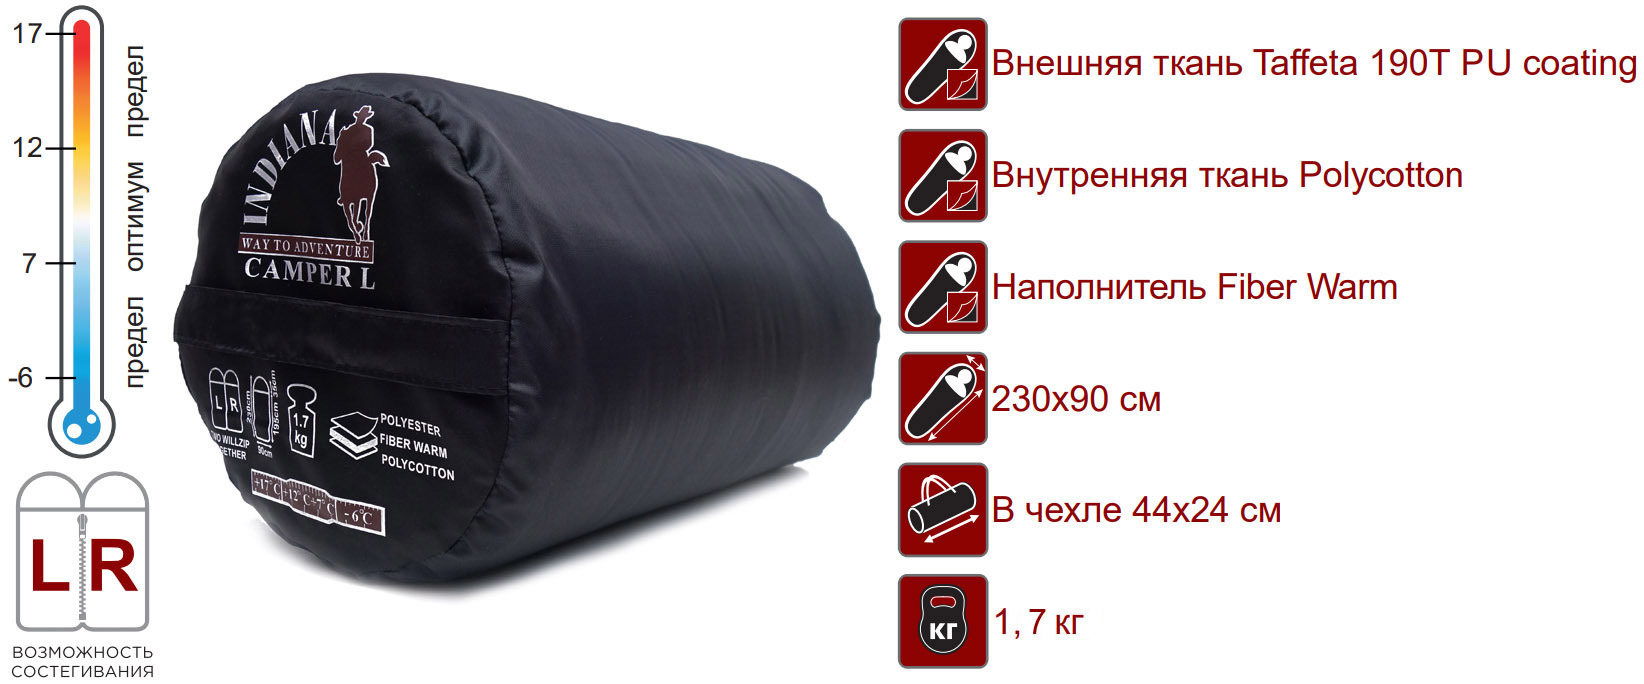 Спальный мешок CAMPER L (от -6С одеяло 195*90 с подголовником)